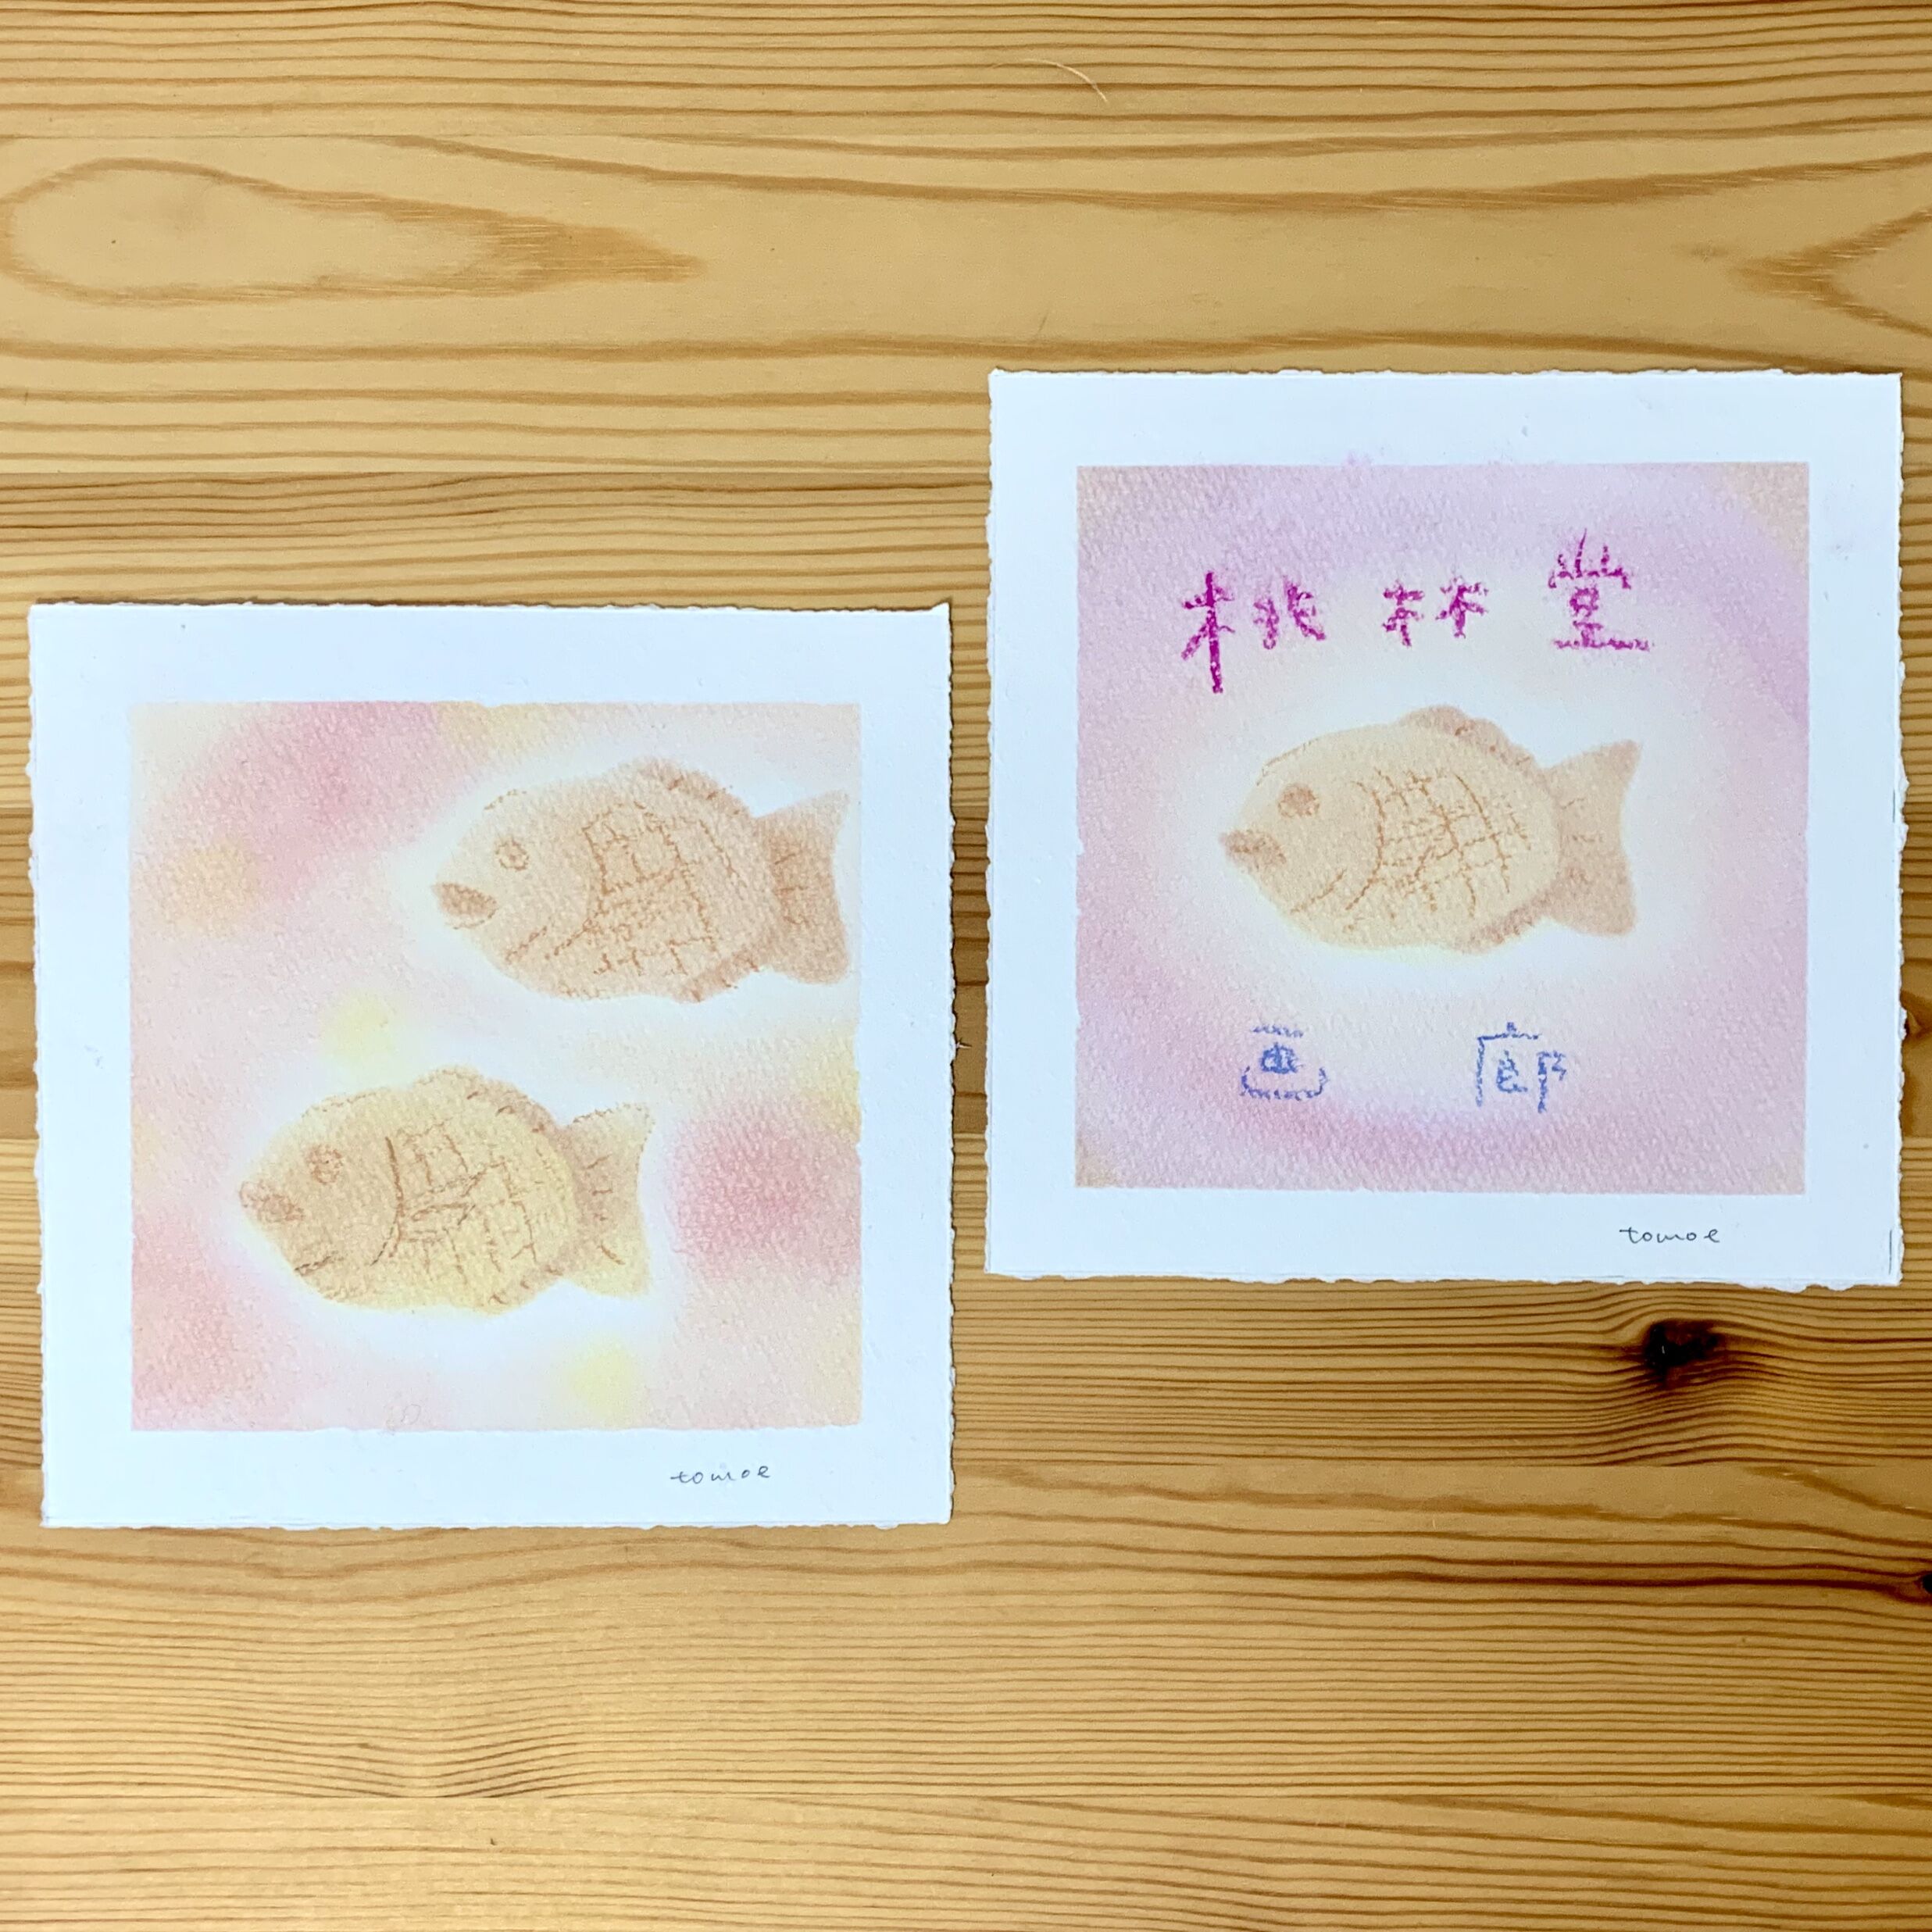 ☆作品展特別WS☆パステルシャインアートで桃林堂さんの「小鯛焼」を描こうの写真